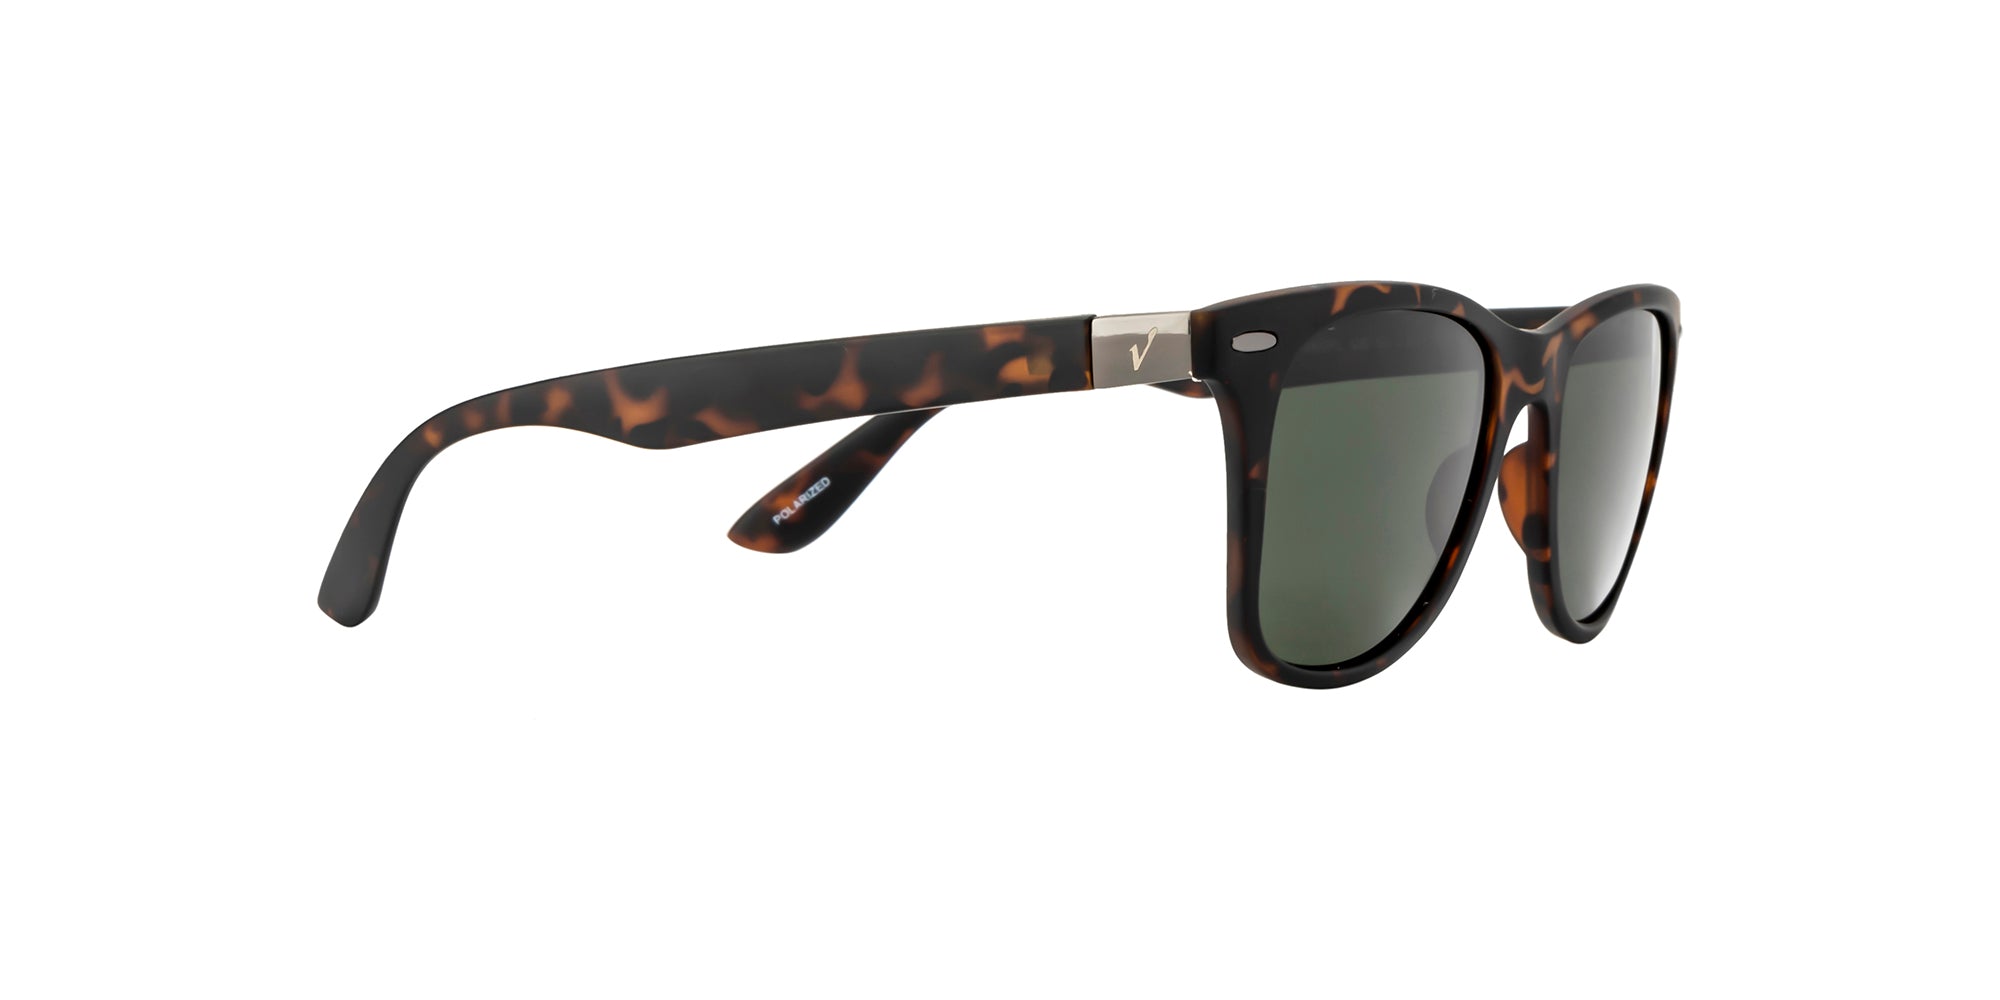 Velocity Sunglasses Polarized 1960 Brown Square Sunglass